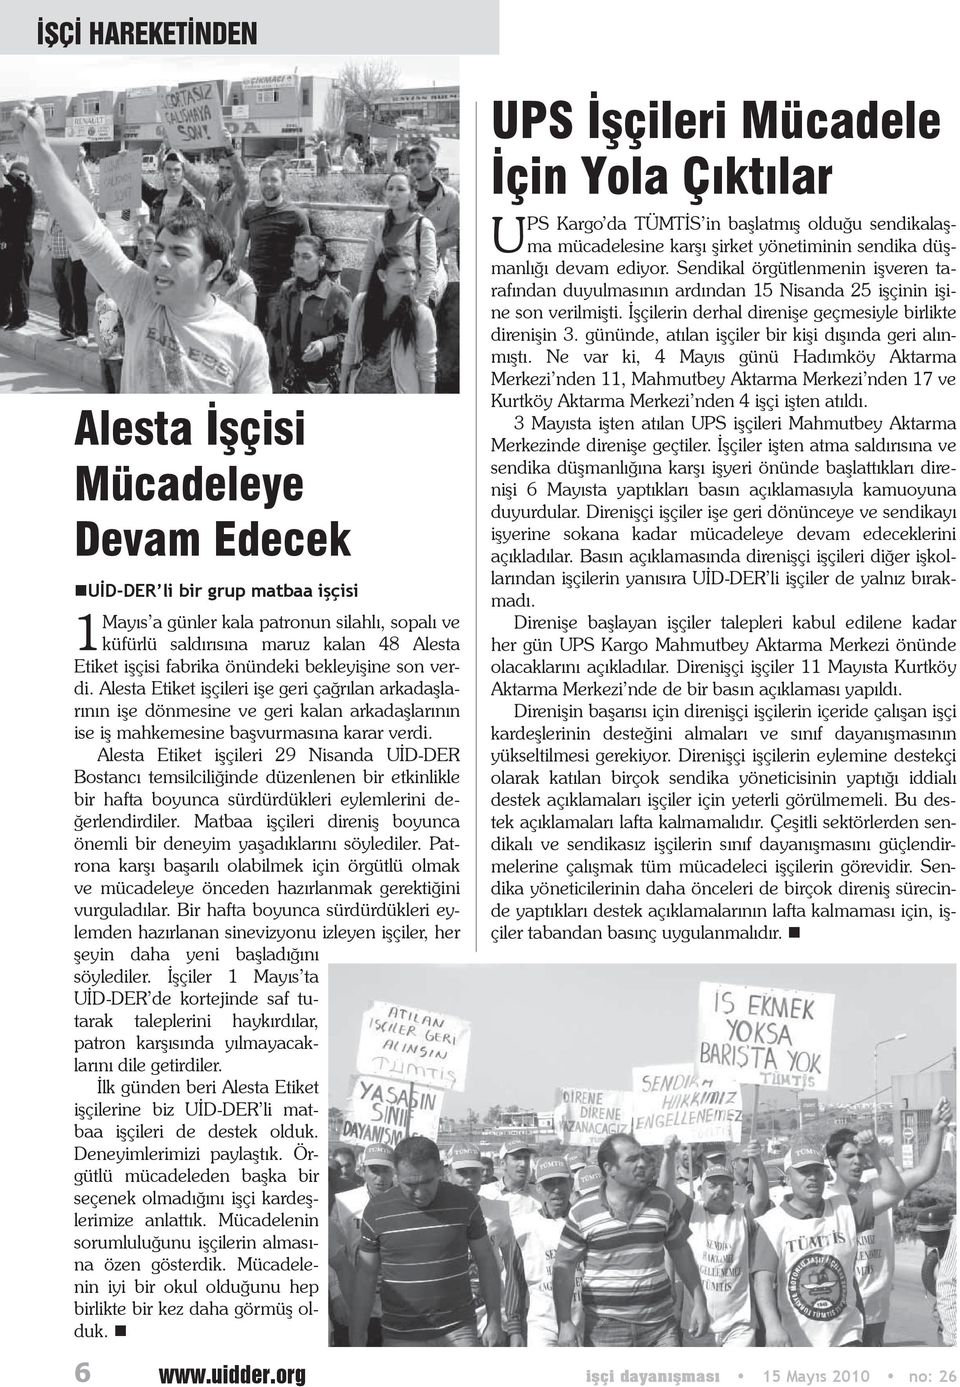 Alesta Etiket işçileri 29 Nisanda UİD-DER Bostancı temsilciliğinde düzenlenen bir etkinlikle bir hafta boyunca sürdürdükleri eylemlerini değerlendirdiler.